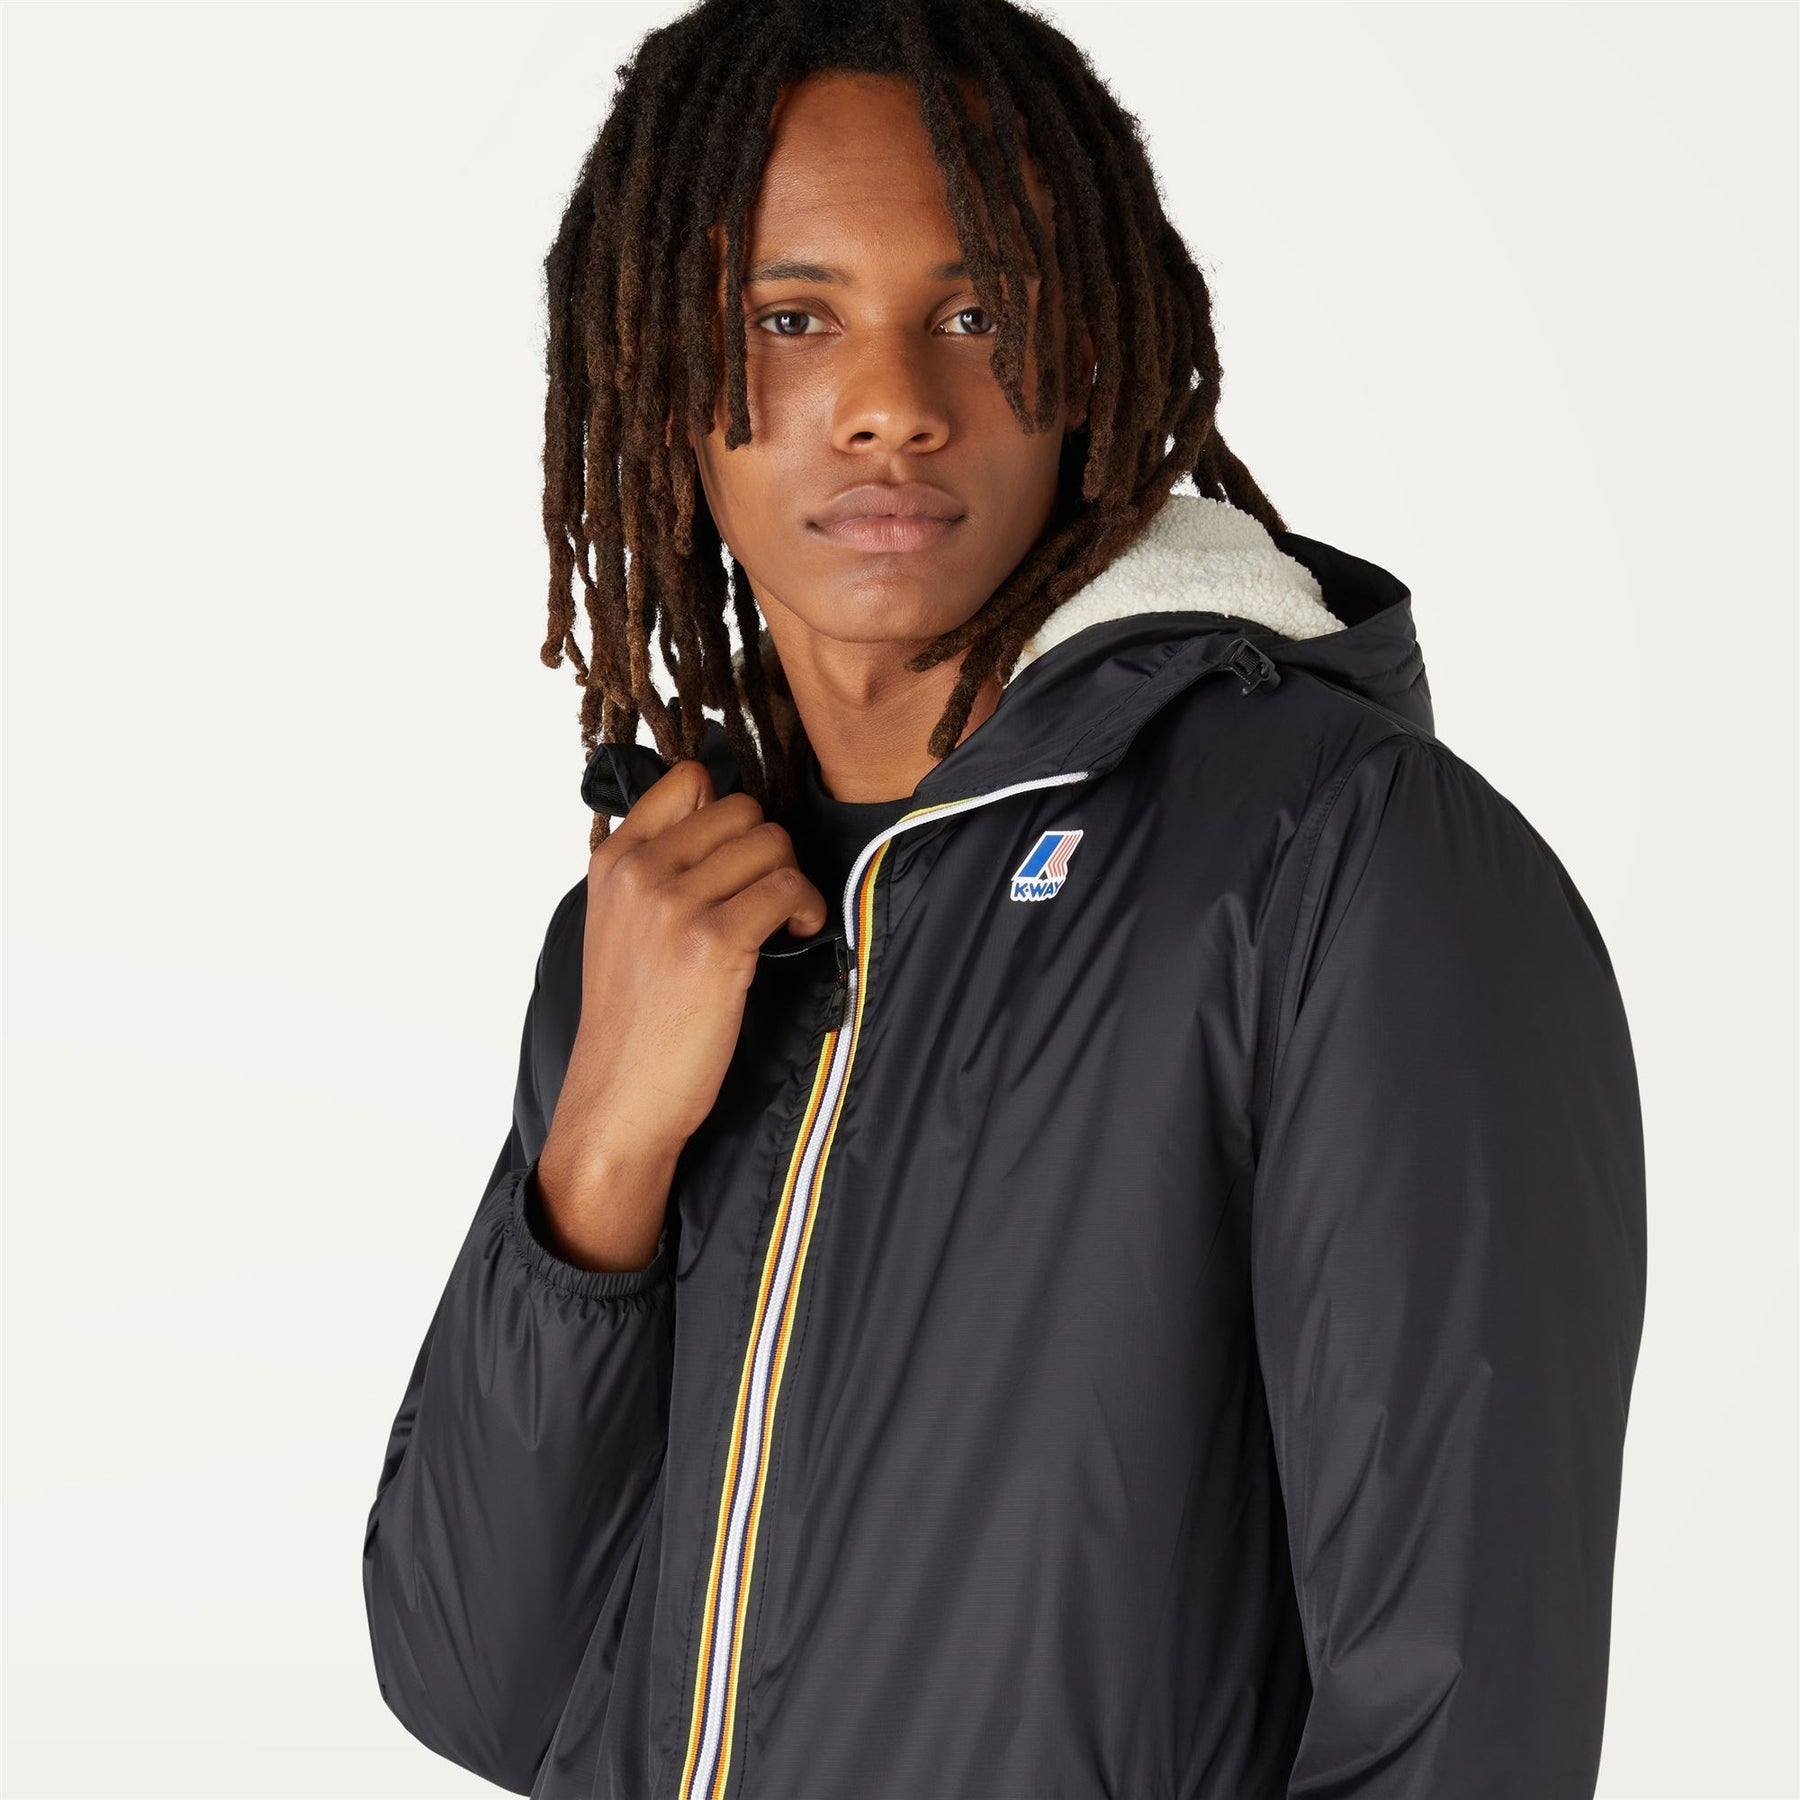 K-Way Men's Merlin Zip-Through Fleece Jacket